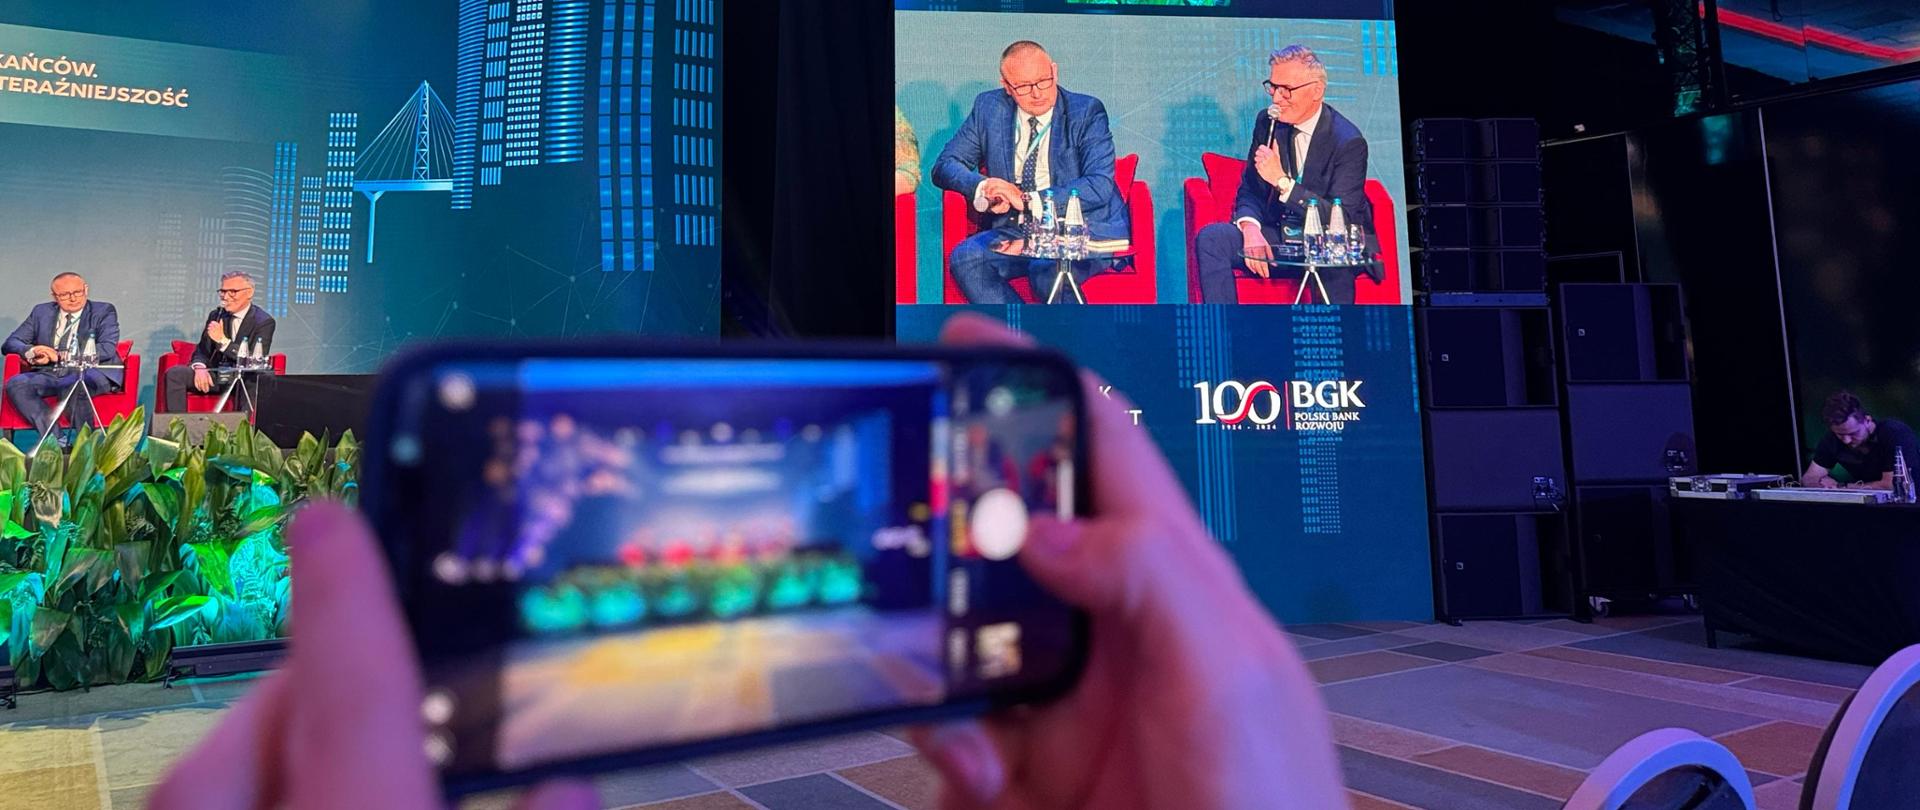 Na pierwszym planie dłonie trzymające smartfon, na ekranie scena z prelegentami, w tle ekran z bliskim ujęciem panelistów